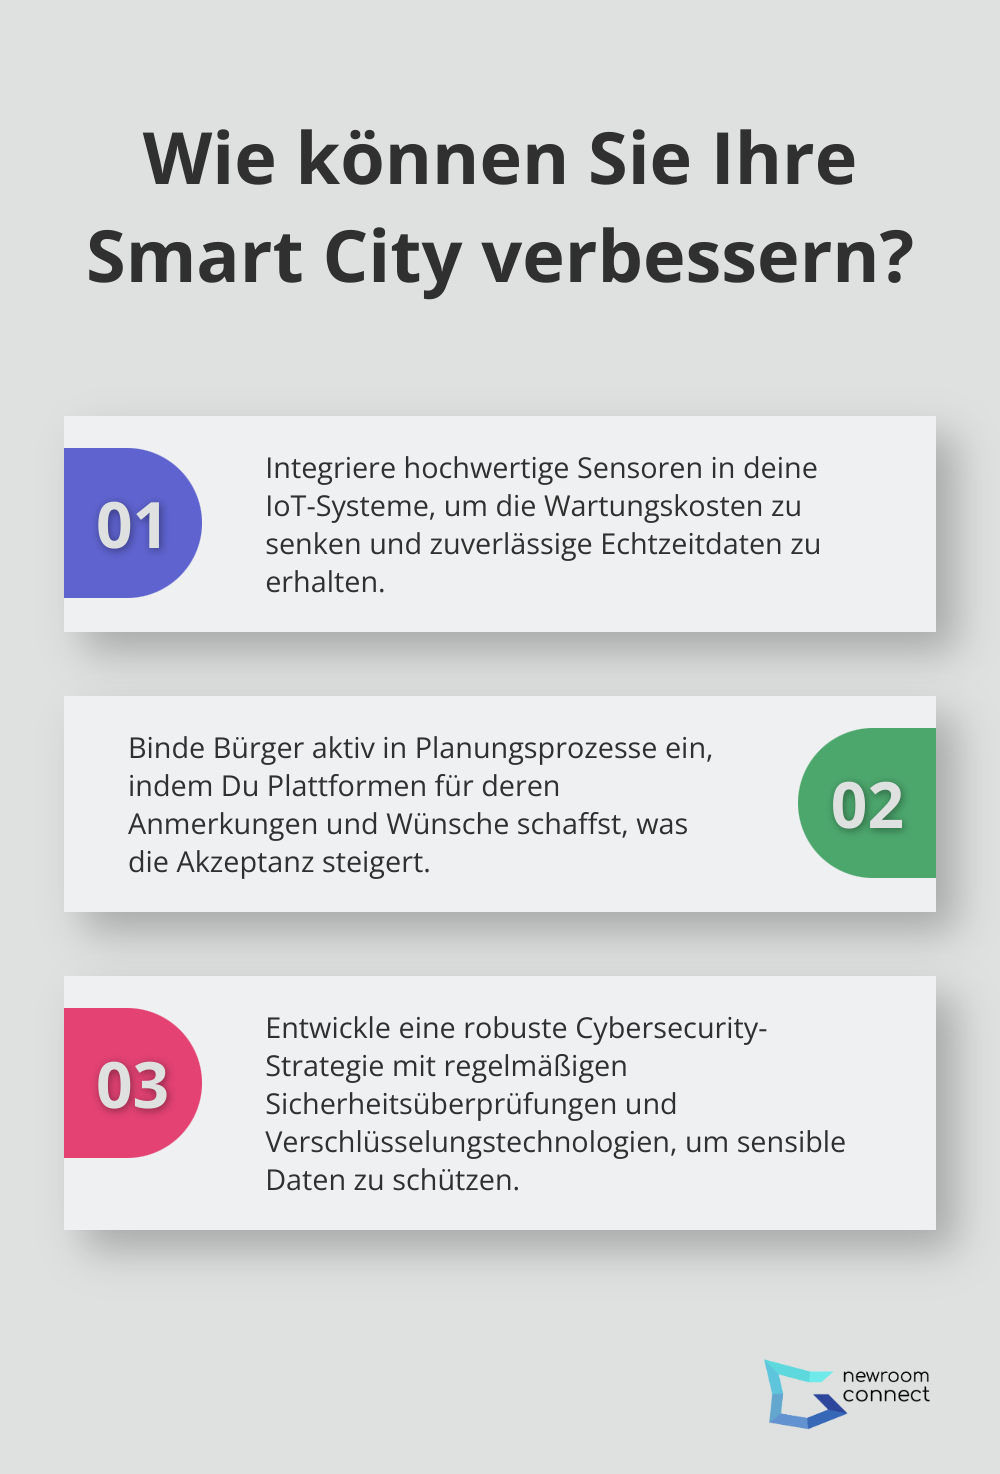 Fact - Wie können Sie Ihre Smart City verbessern?